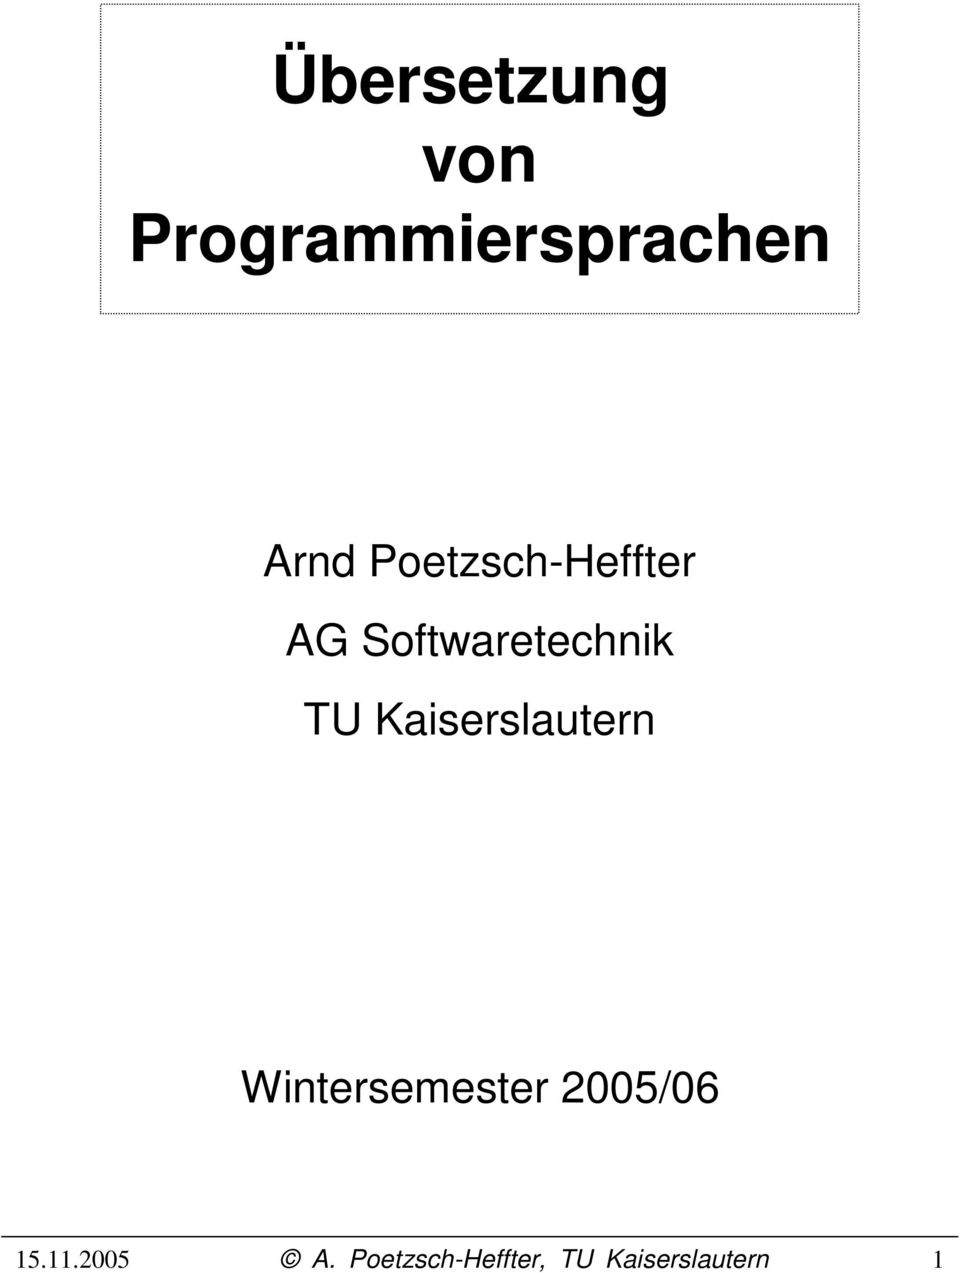 Poetzsch-Heffter AG